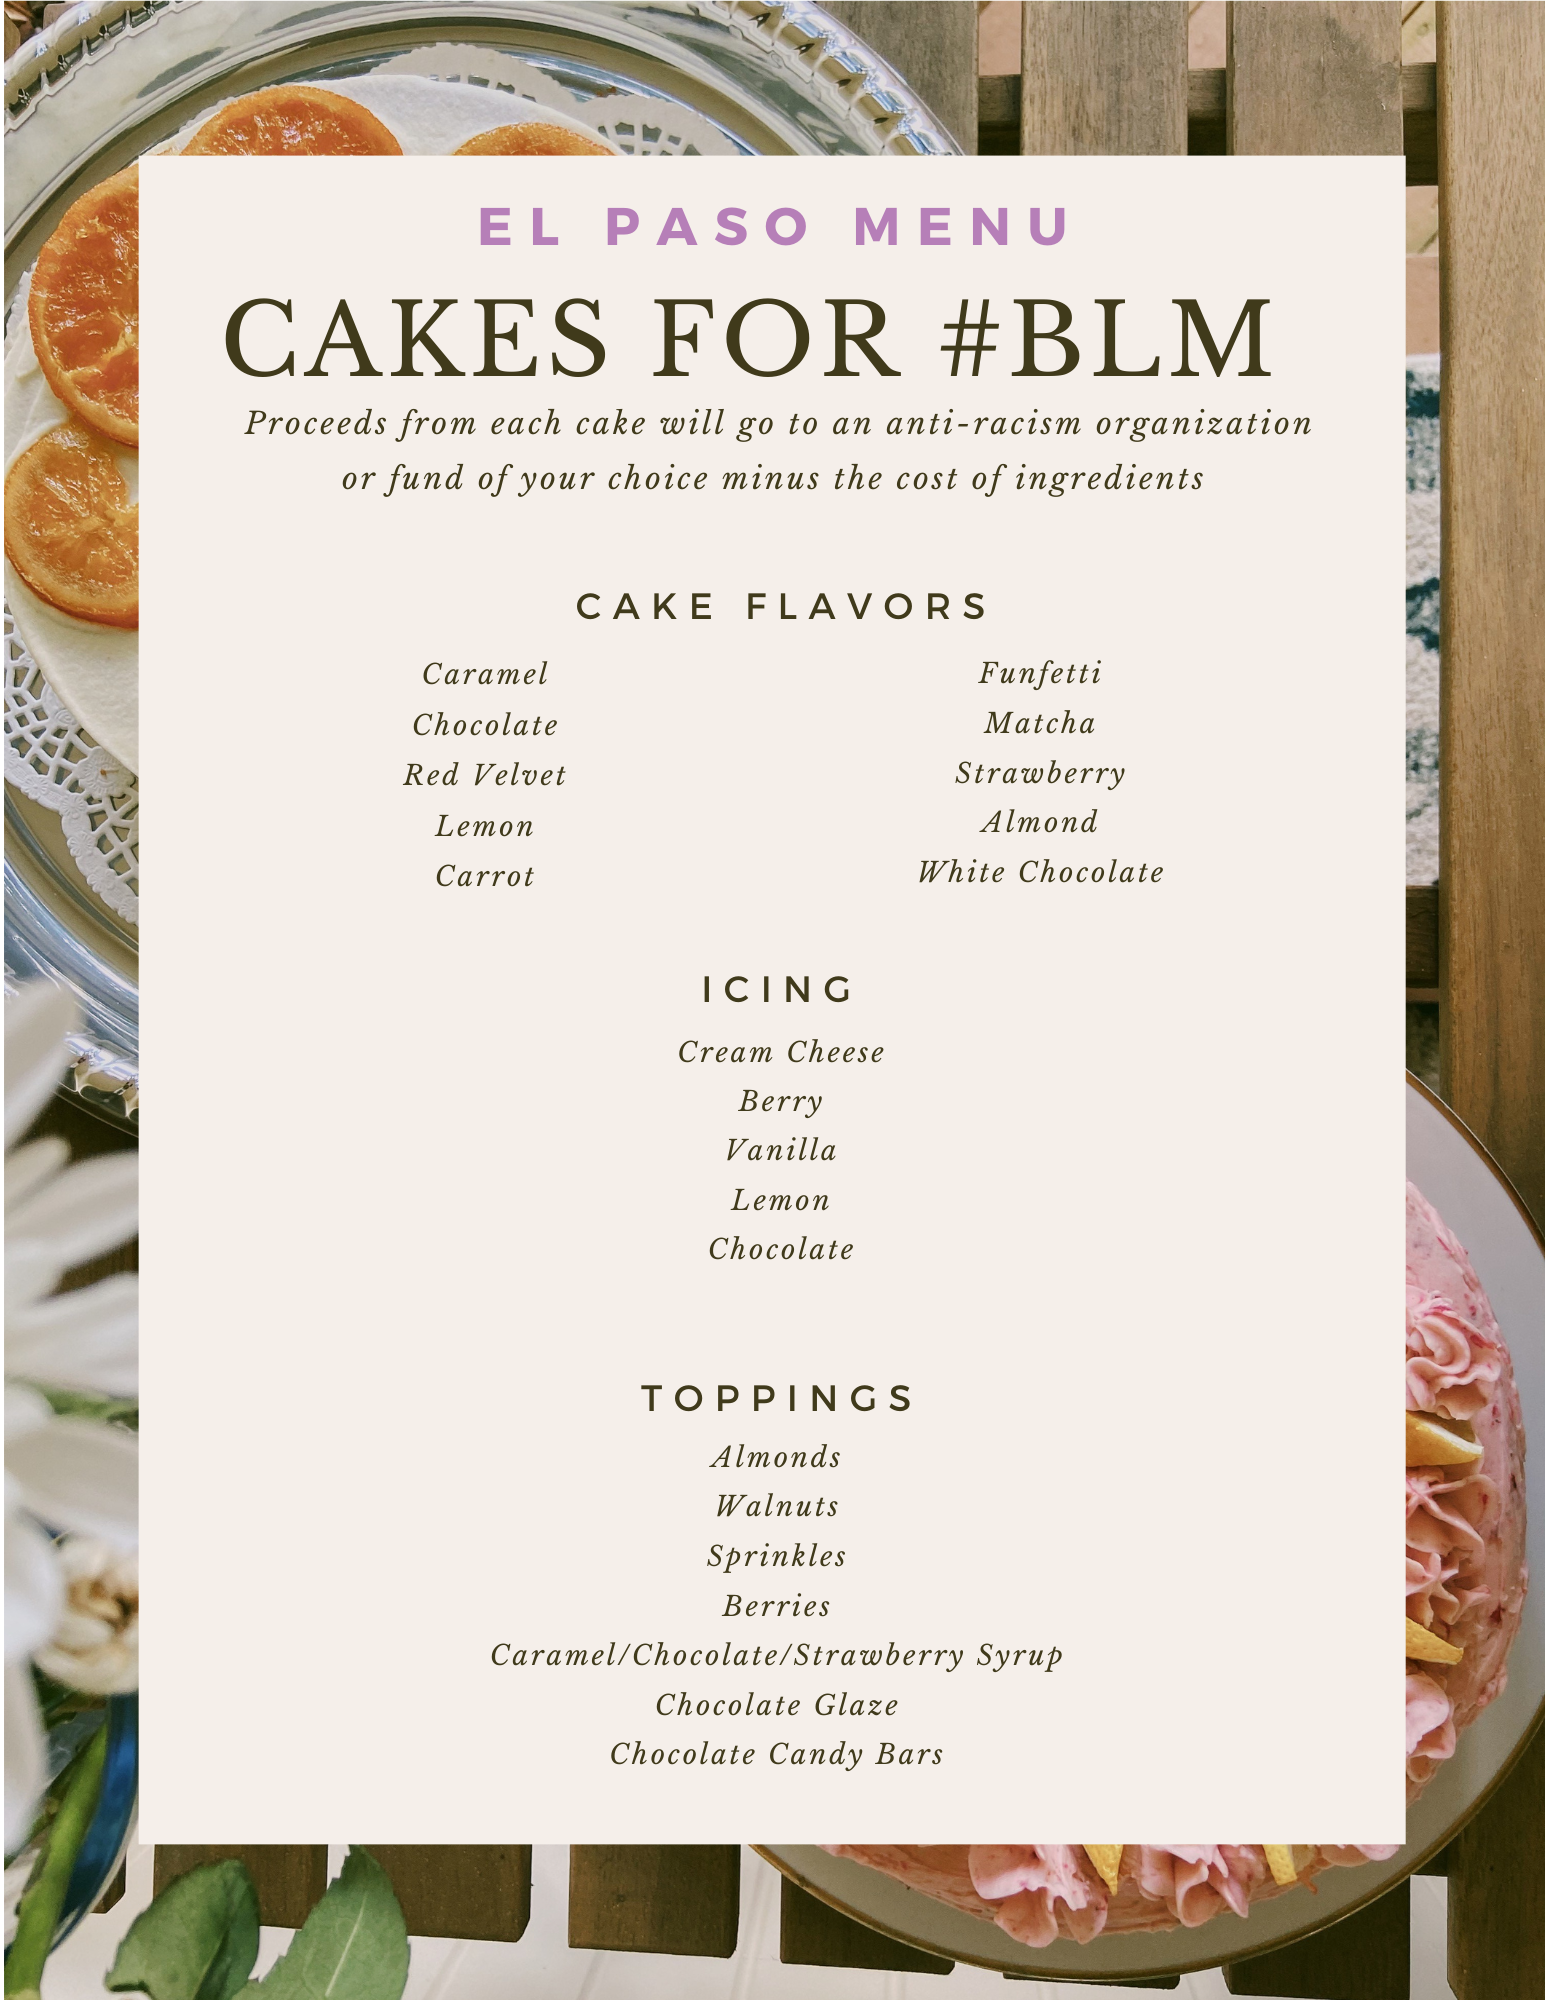 Cakes for BLM - El Paso, Texas